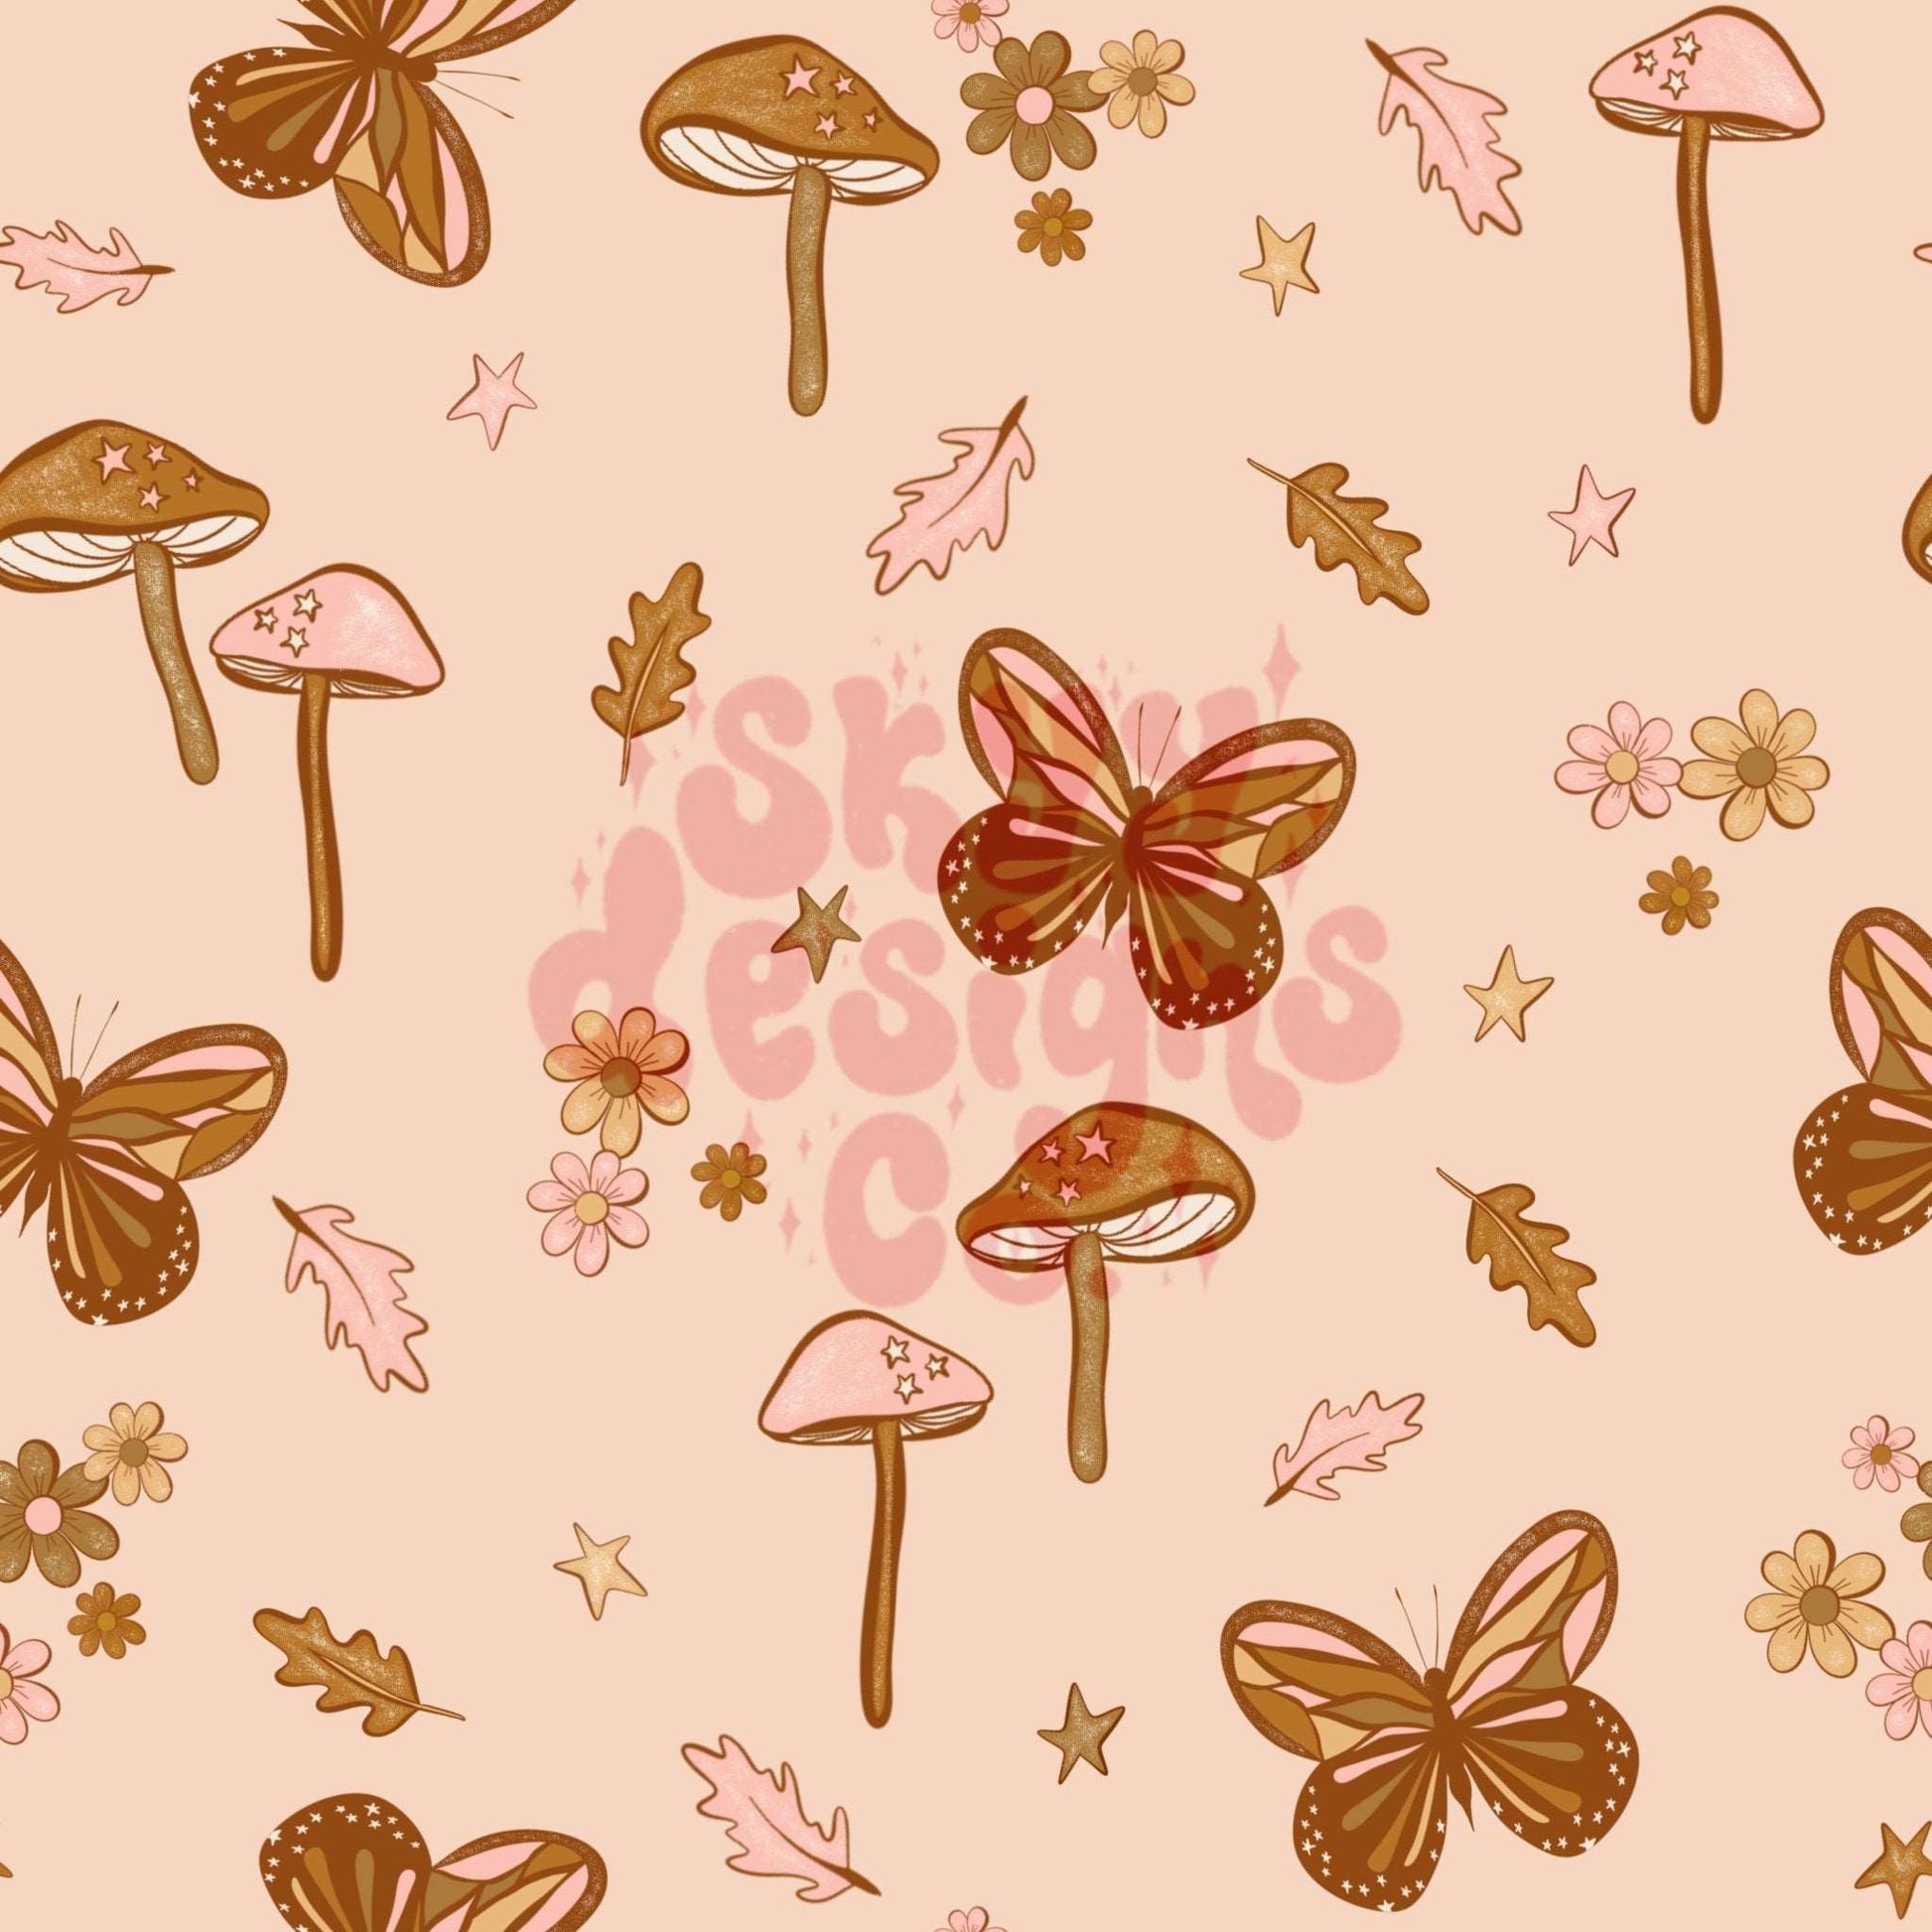 Fall mushroom glitter seamless pattern - SkyyDesignsCo | Seamless Pattern Designs